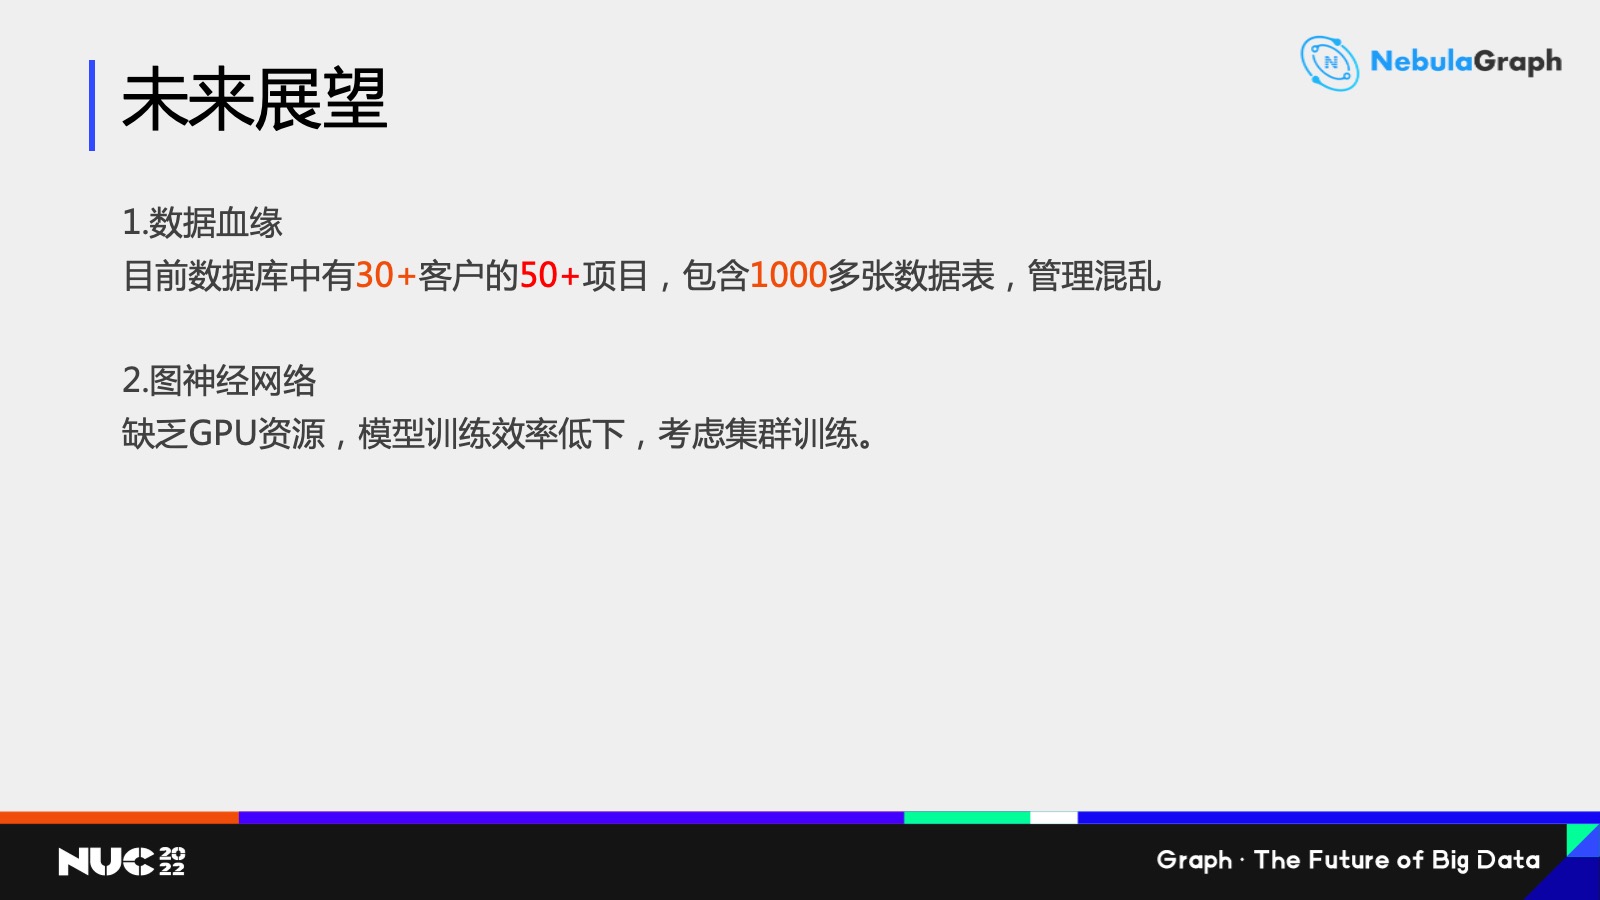 中國移動_圖資料庫平臺的未來展望